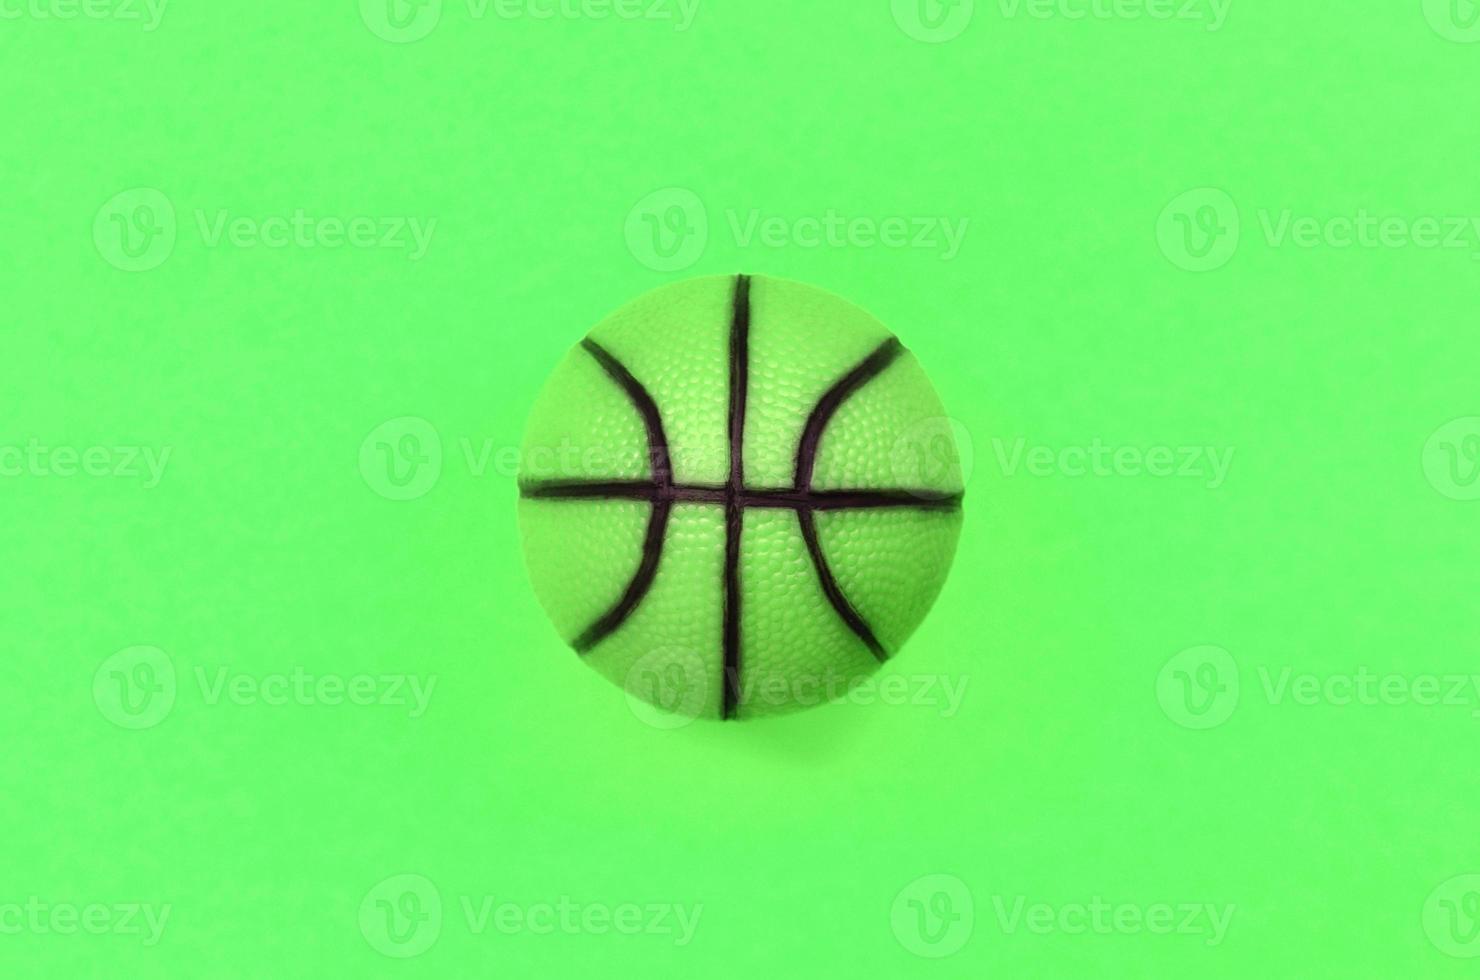 pequeña bola verde para el juego deportivo de baloncesto se encuentra en el fondo de la textura foto